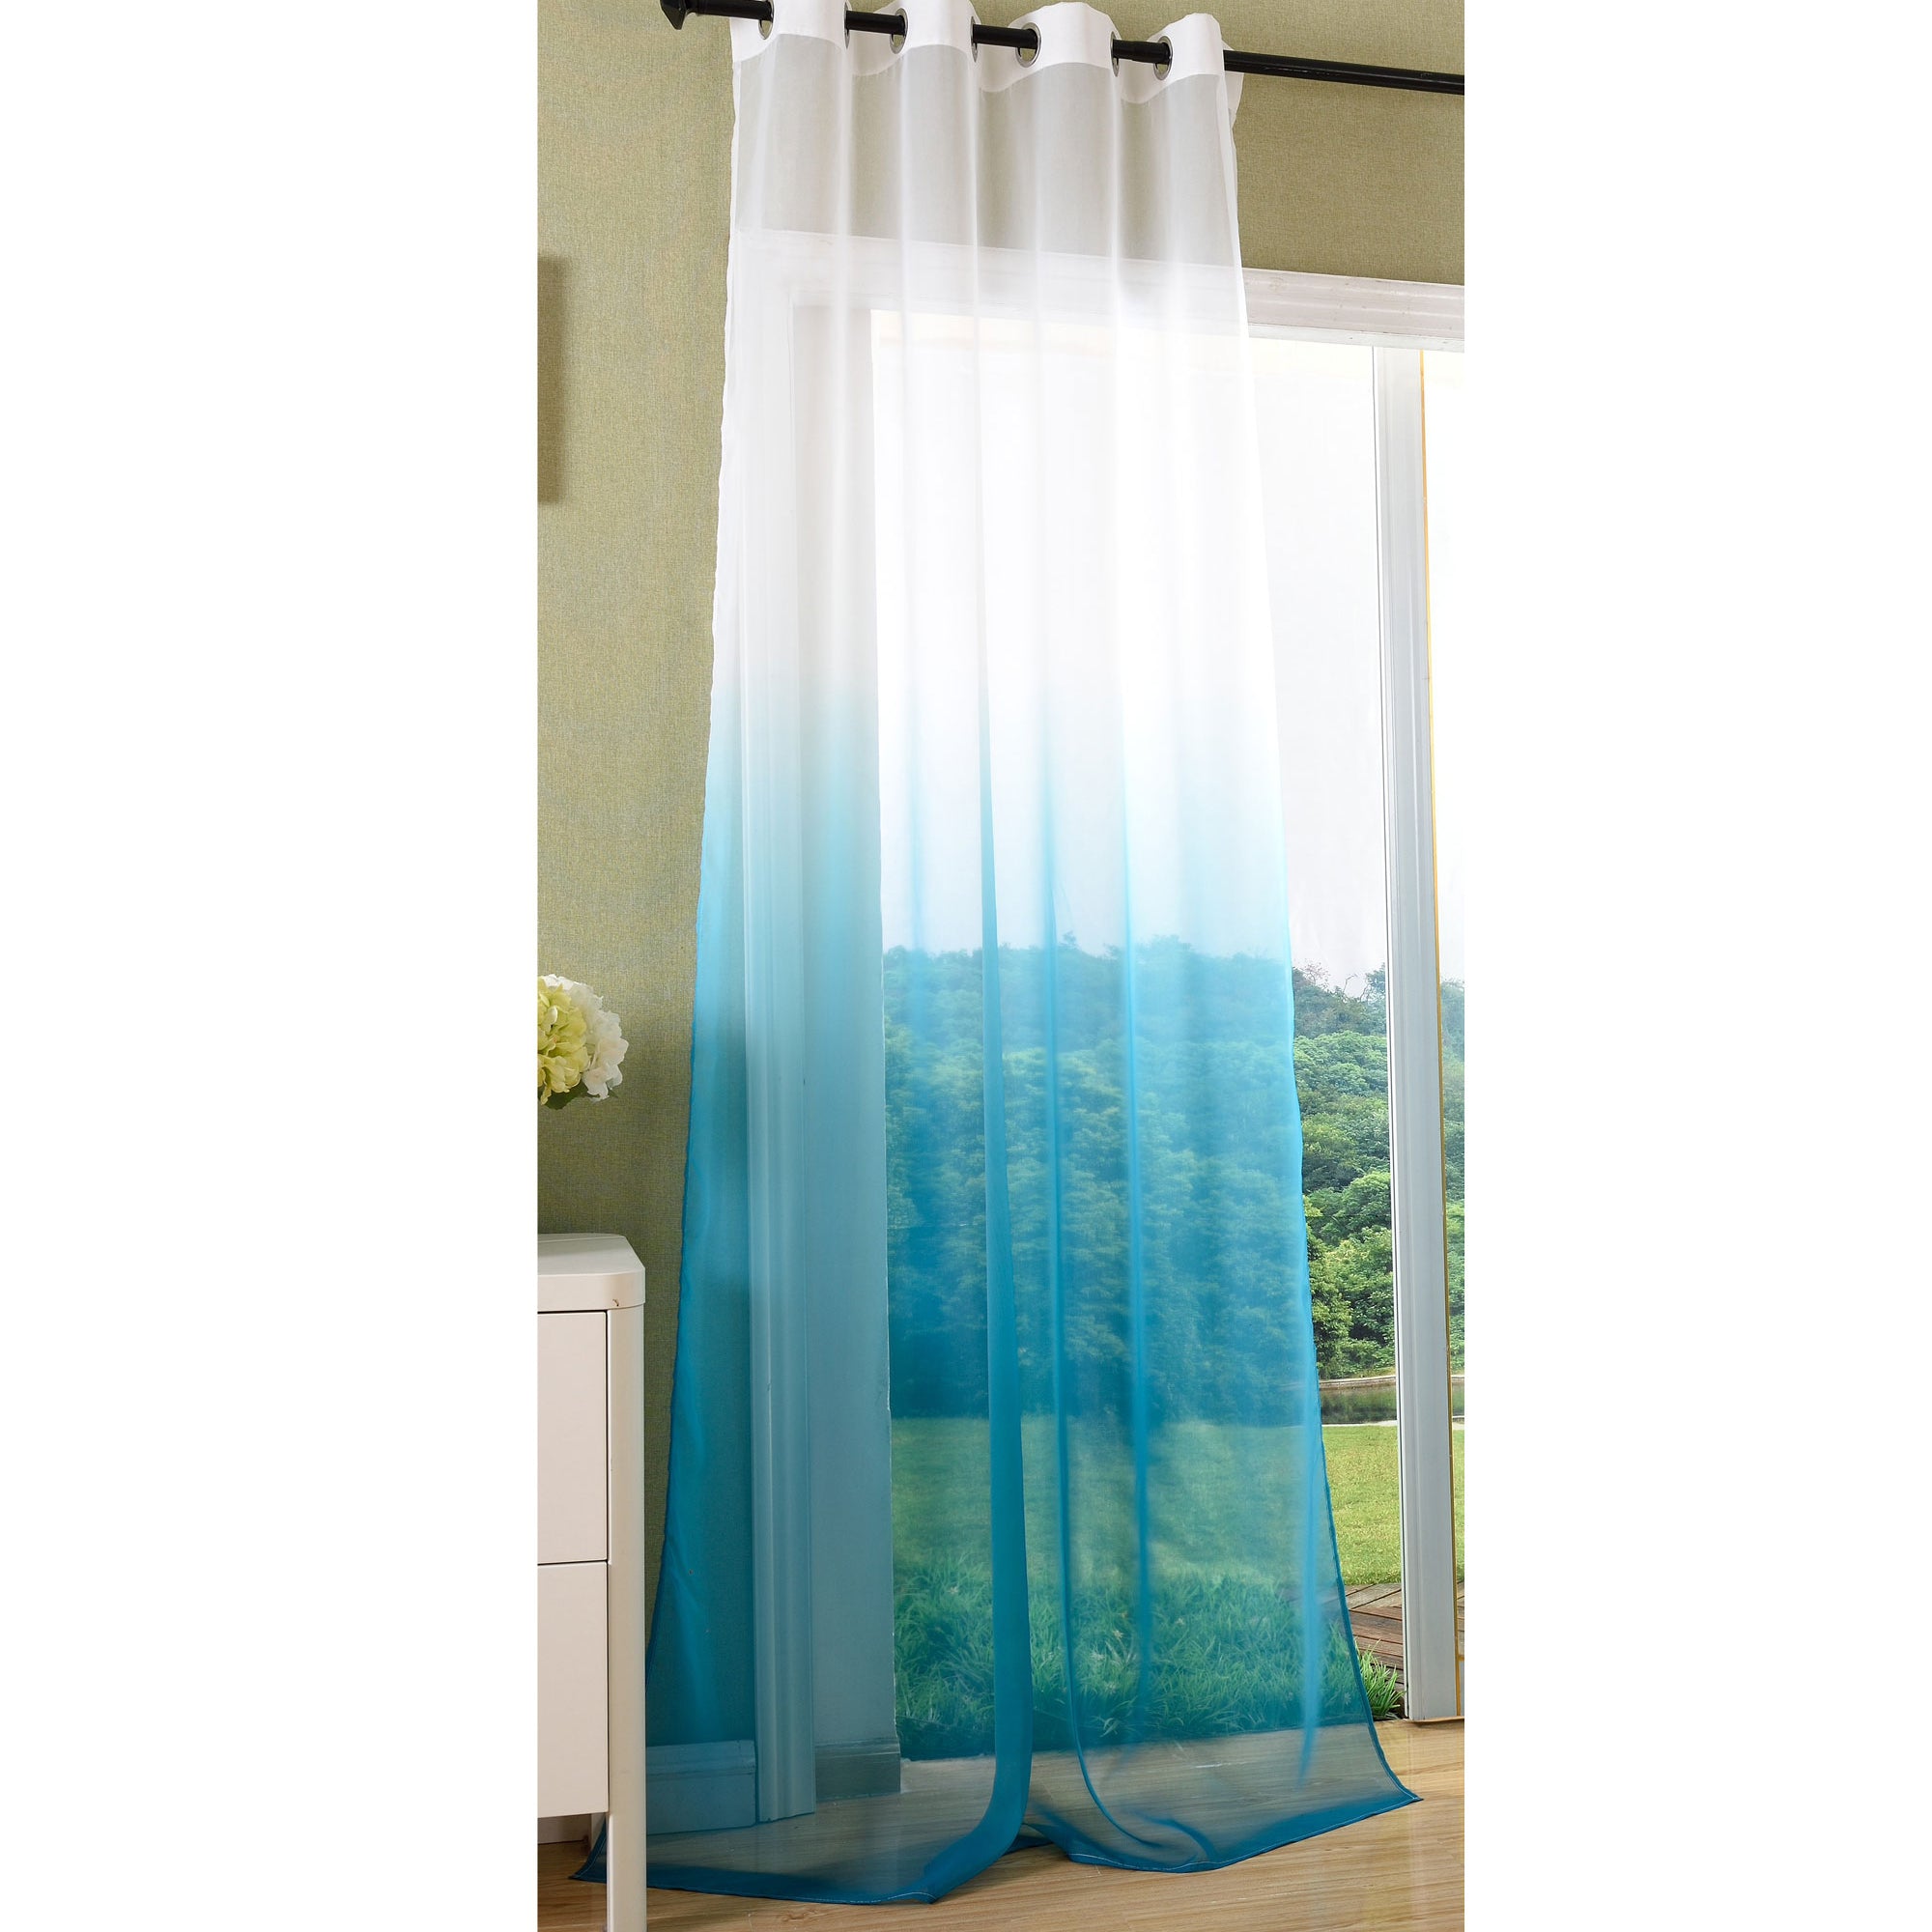 Schal transparent Farbverlauf Vorhang mit Ösen Gardine Voile 204202